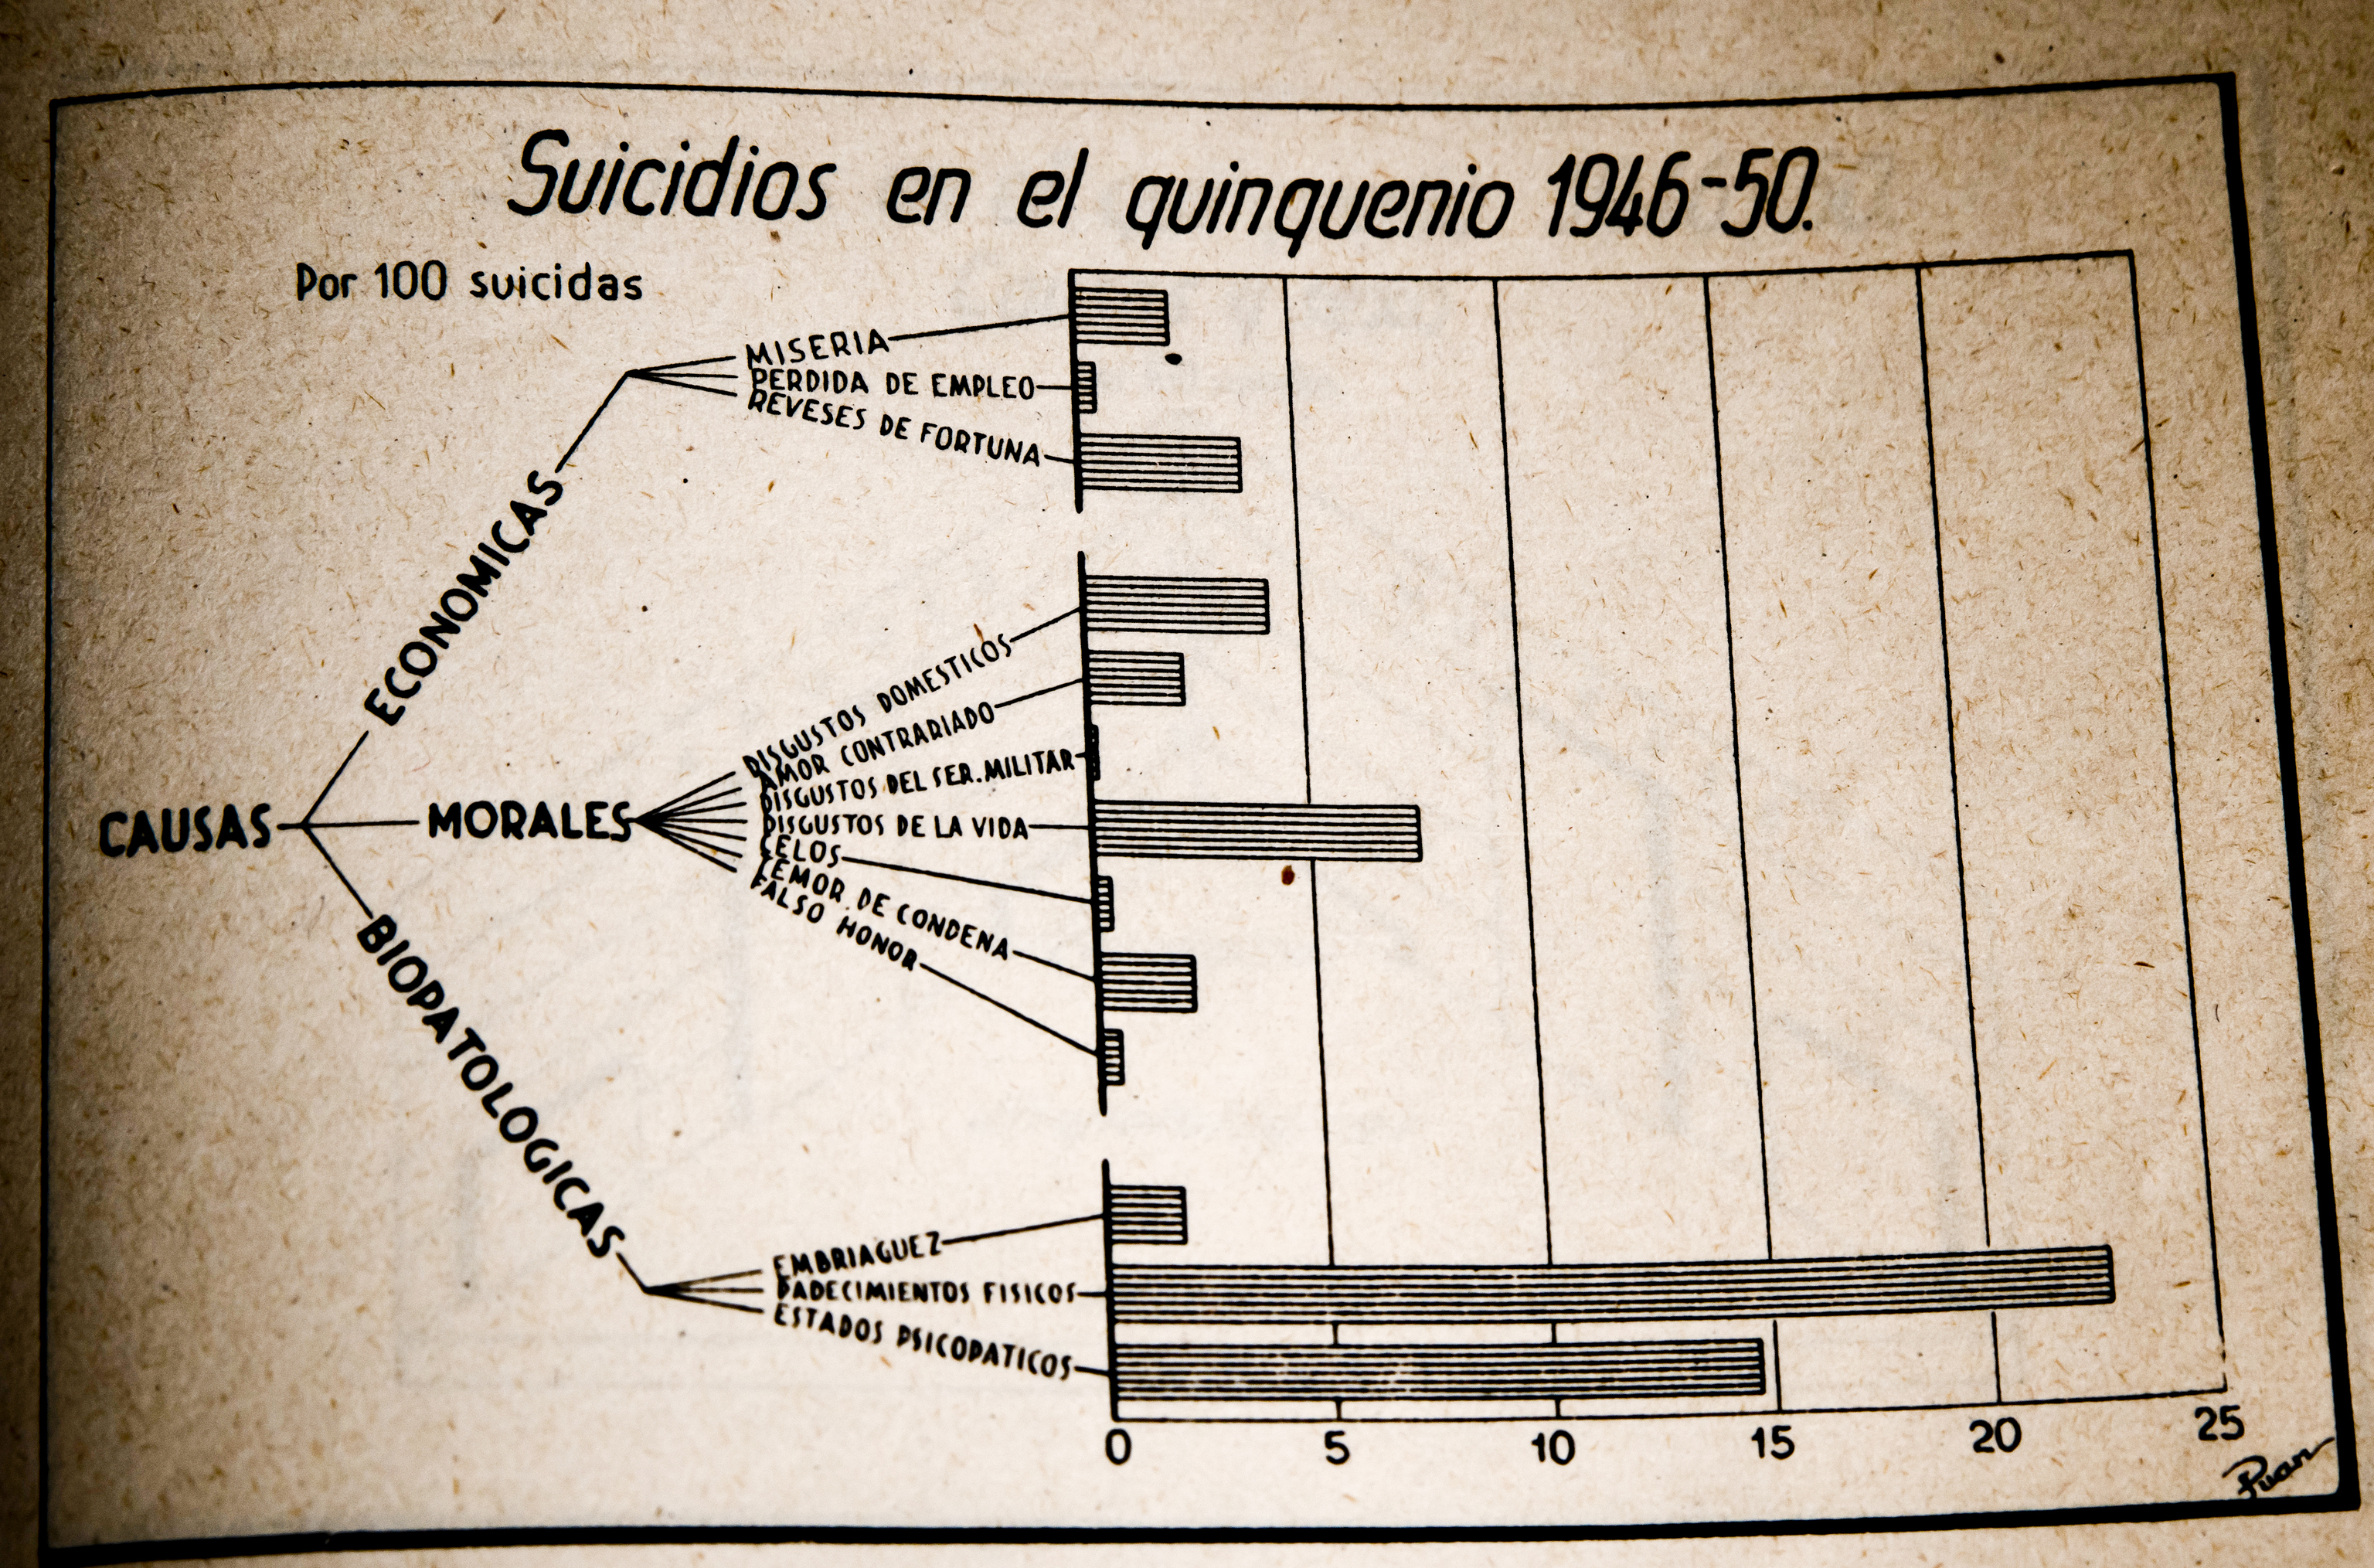 Gráfico del libro 'Estadística del suicidio en España', editado por el Gobierno, del periodo 1946-50.